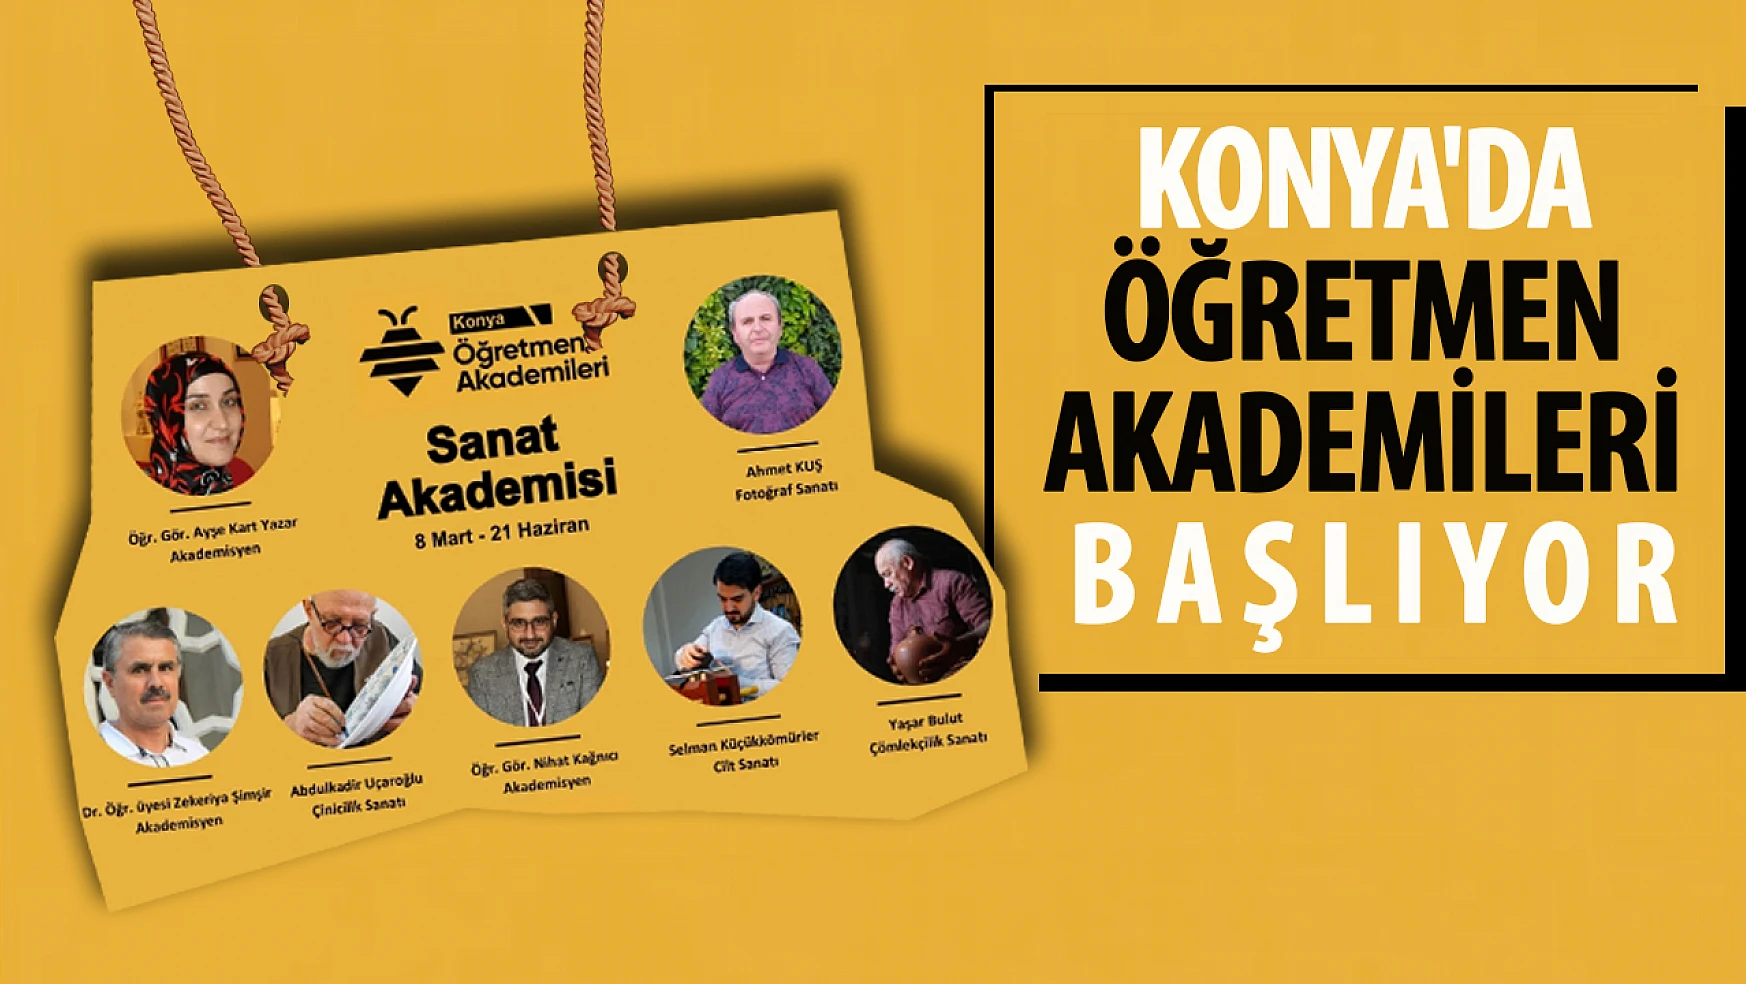 Konya'da Öğretmen Akademileri başlıyor